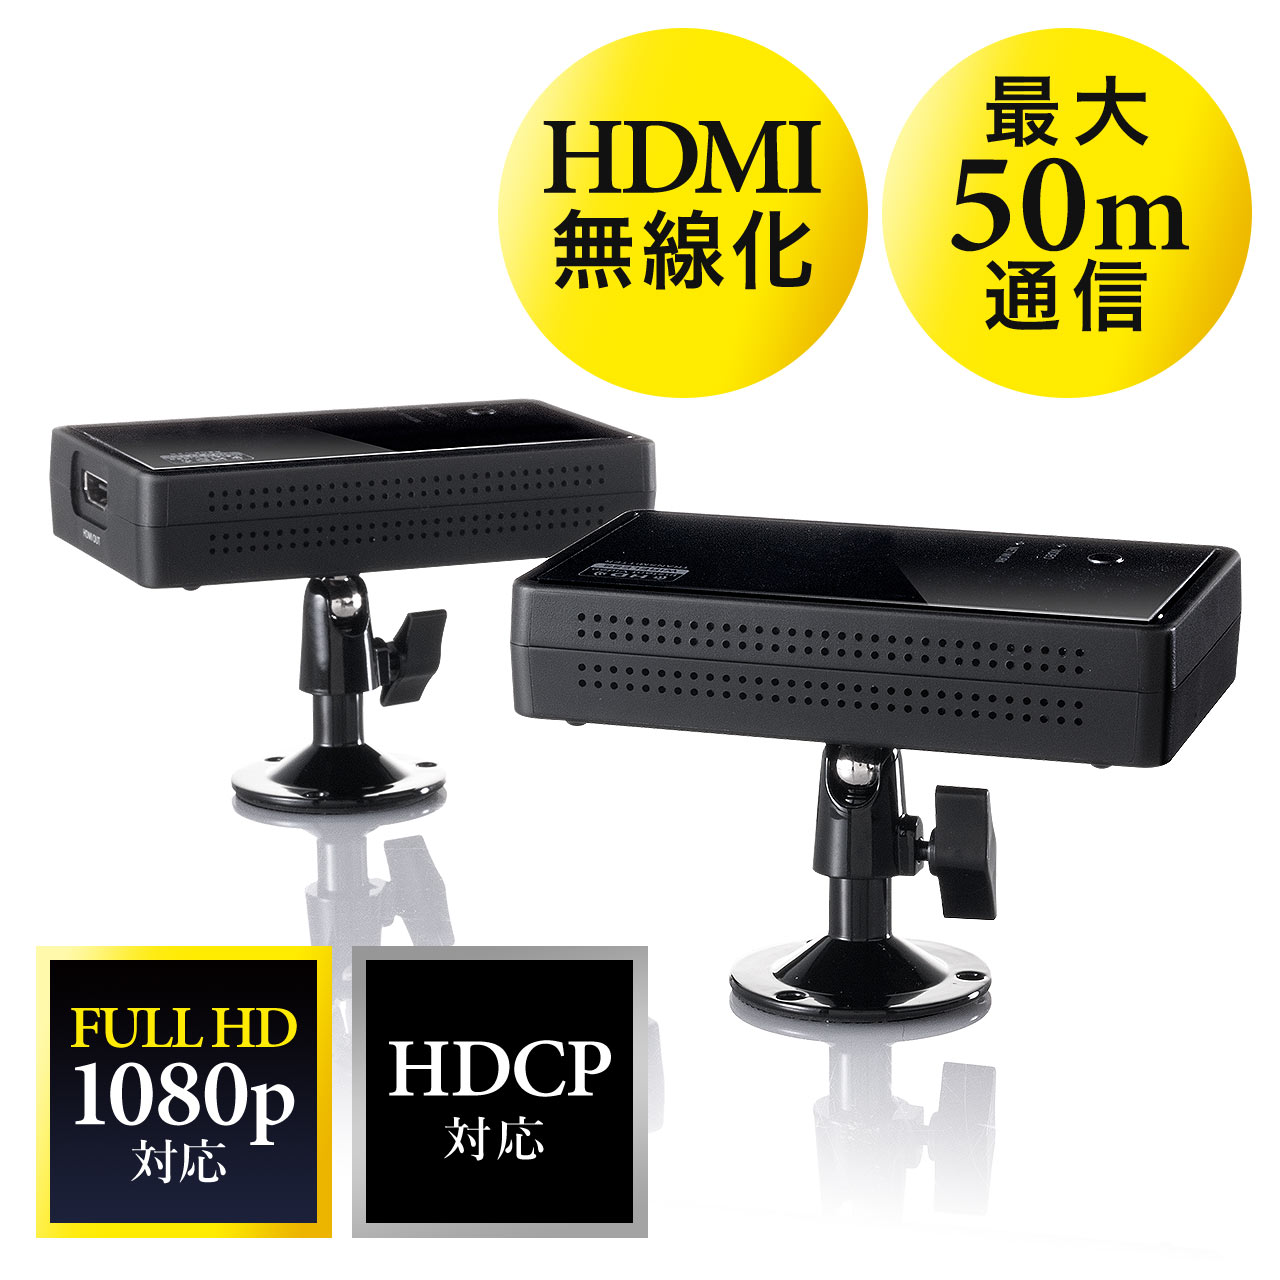 ワイヤレスHDMIエクステンダー フルHD 最大50m 送受信機セット 無線 HDMI延長器 400-VGA012 |サンワダイレクト